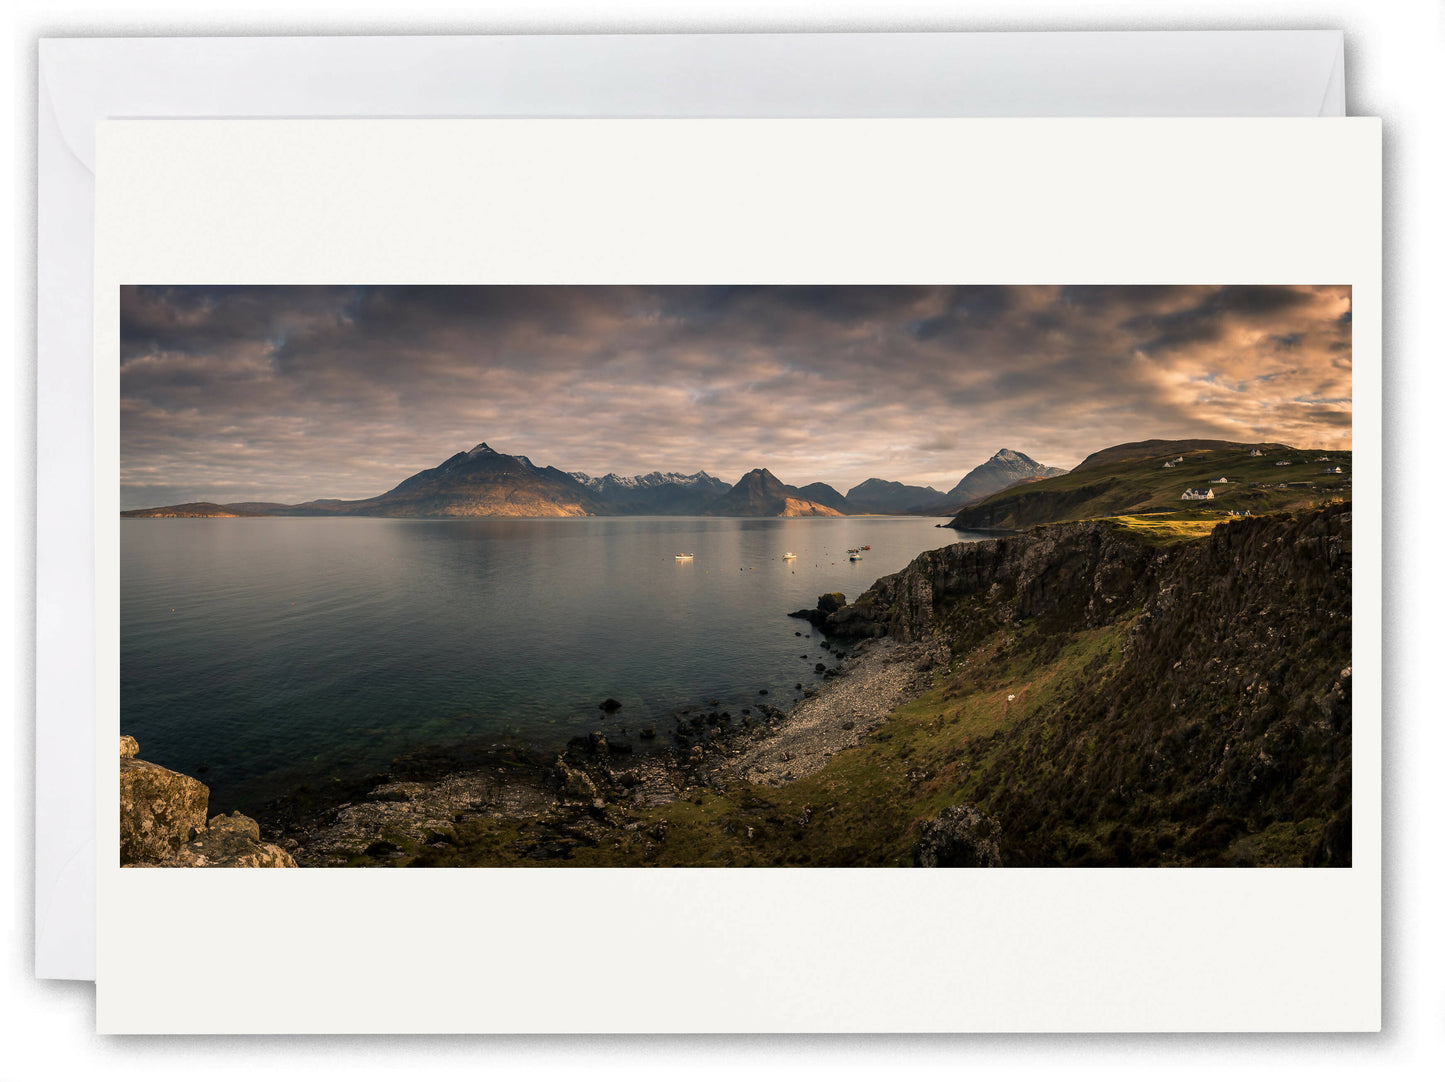 Cuillins & Elgol, Isle of Skye - Scotland Greeting Card - Blank Inside